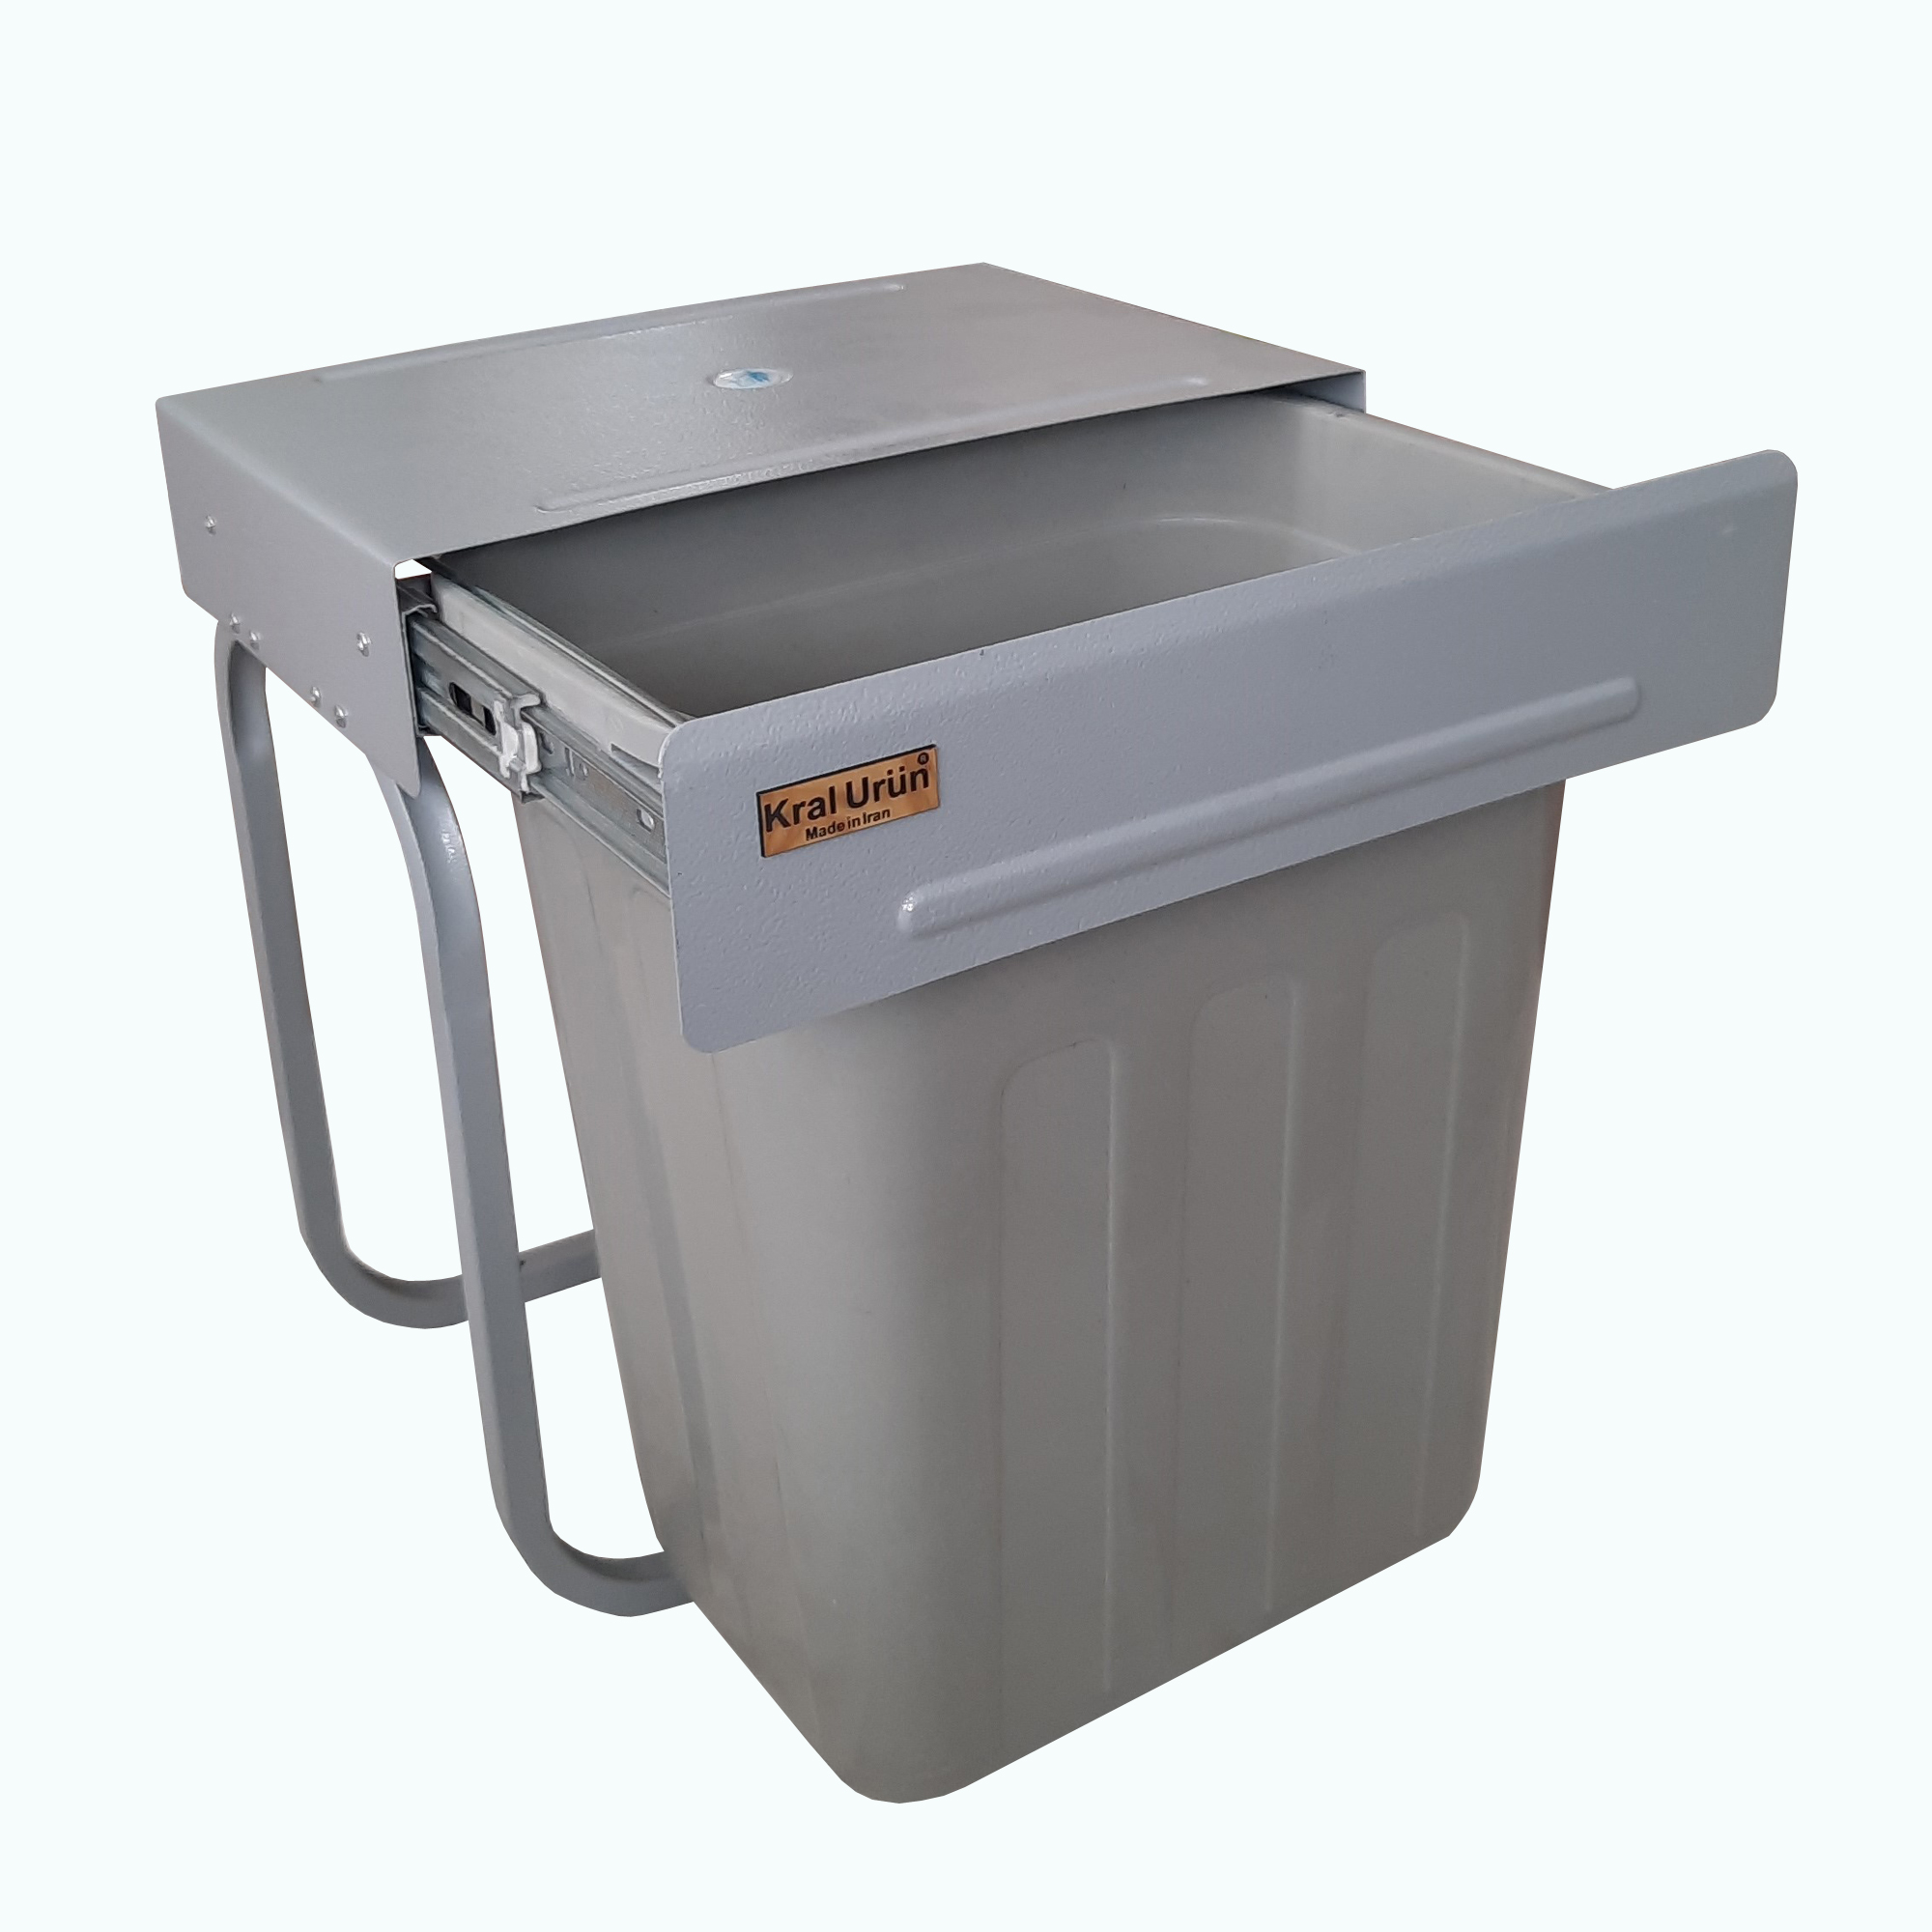 سطل زباله کابینتی کرال اورون کد 11